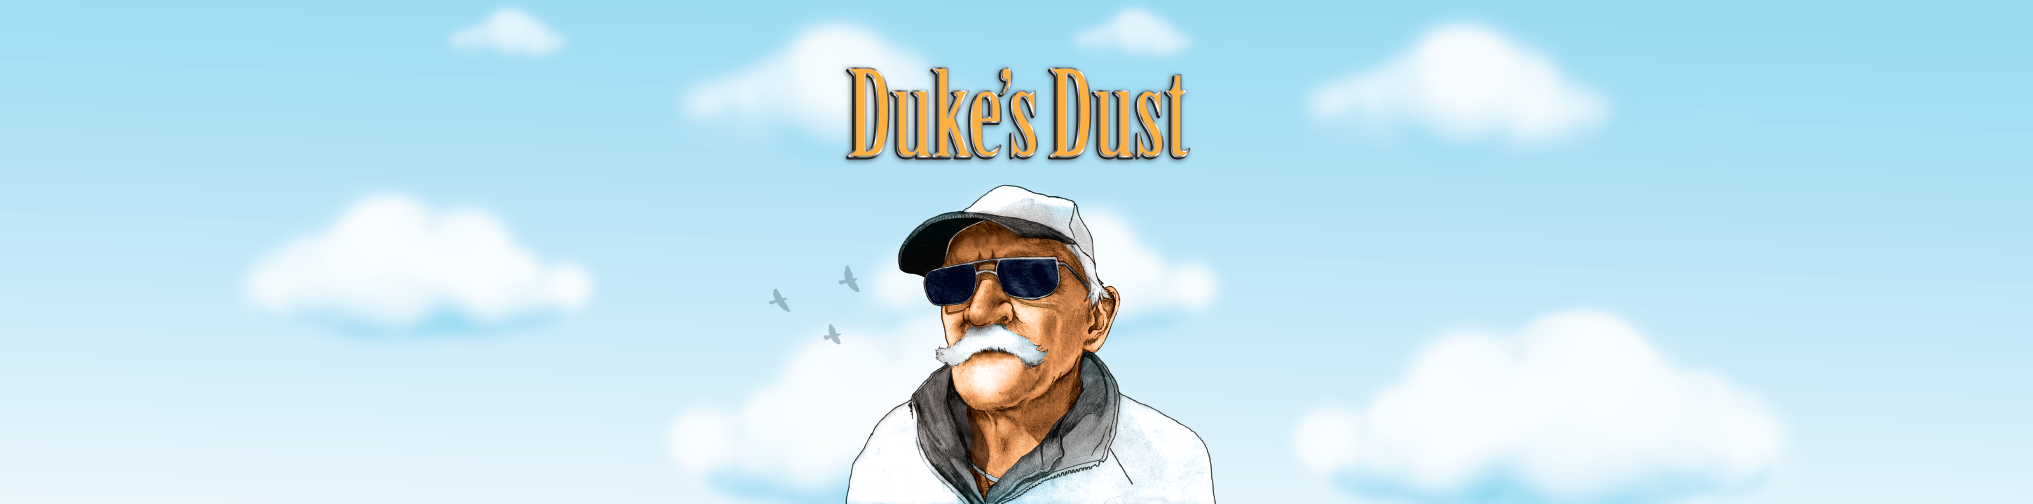 Duke’s Dust™